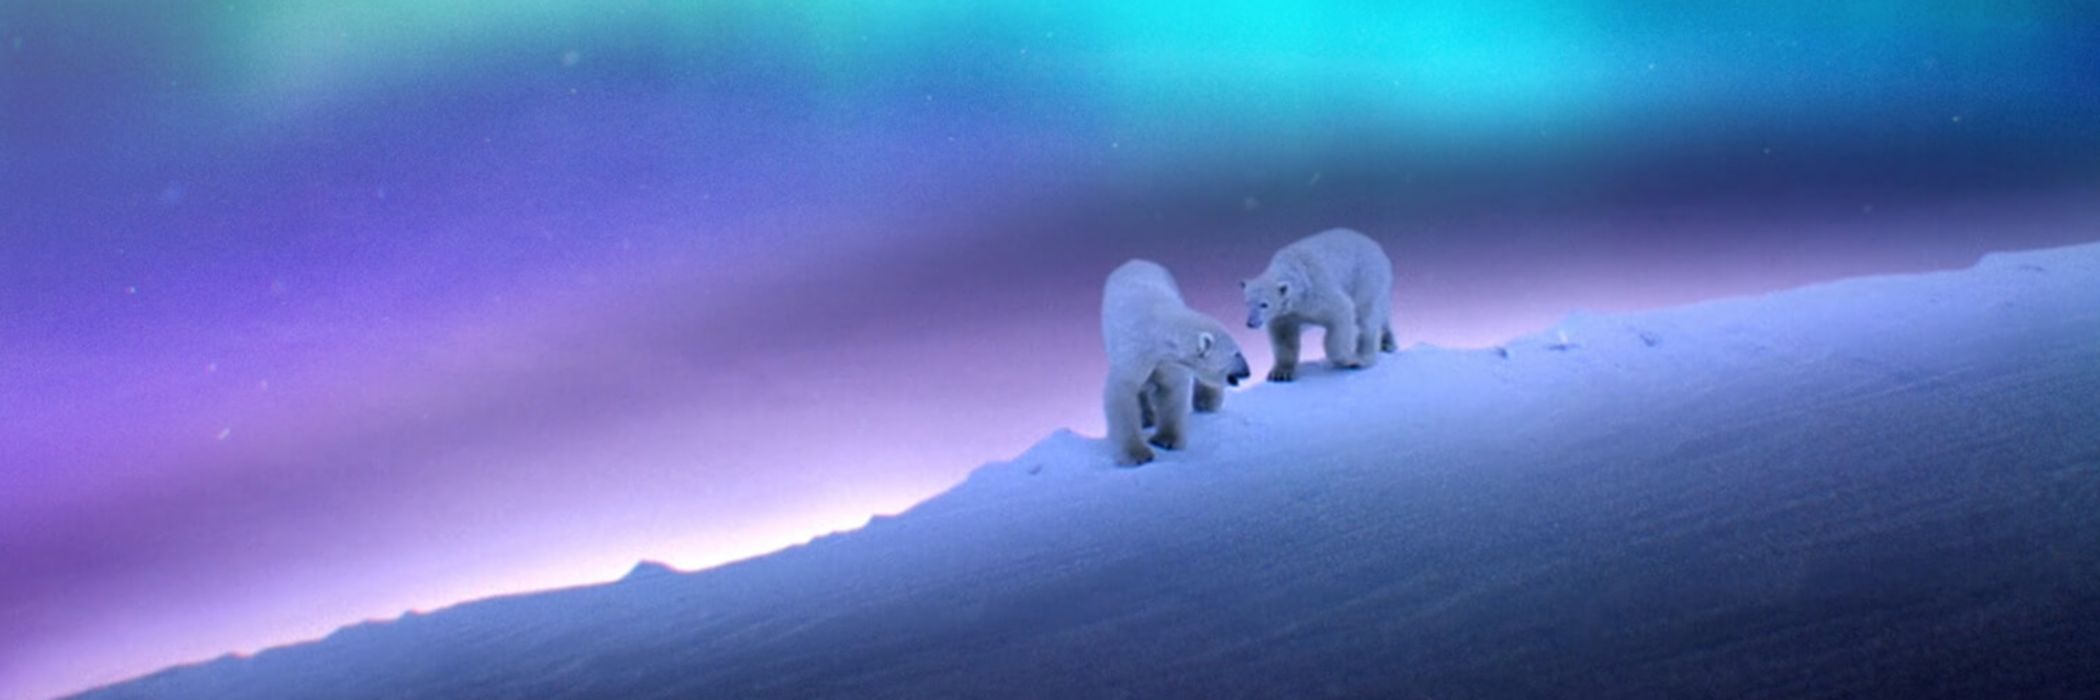 Deux ours polaires sous les aurores boréales